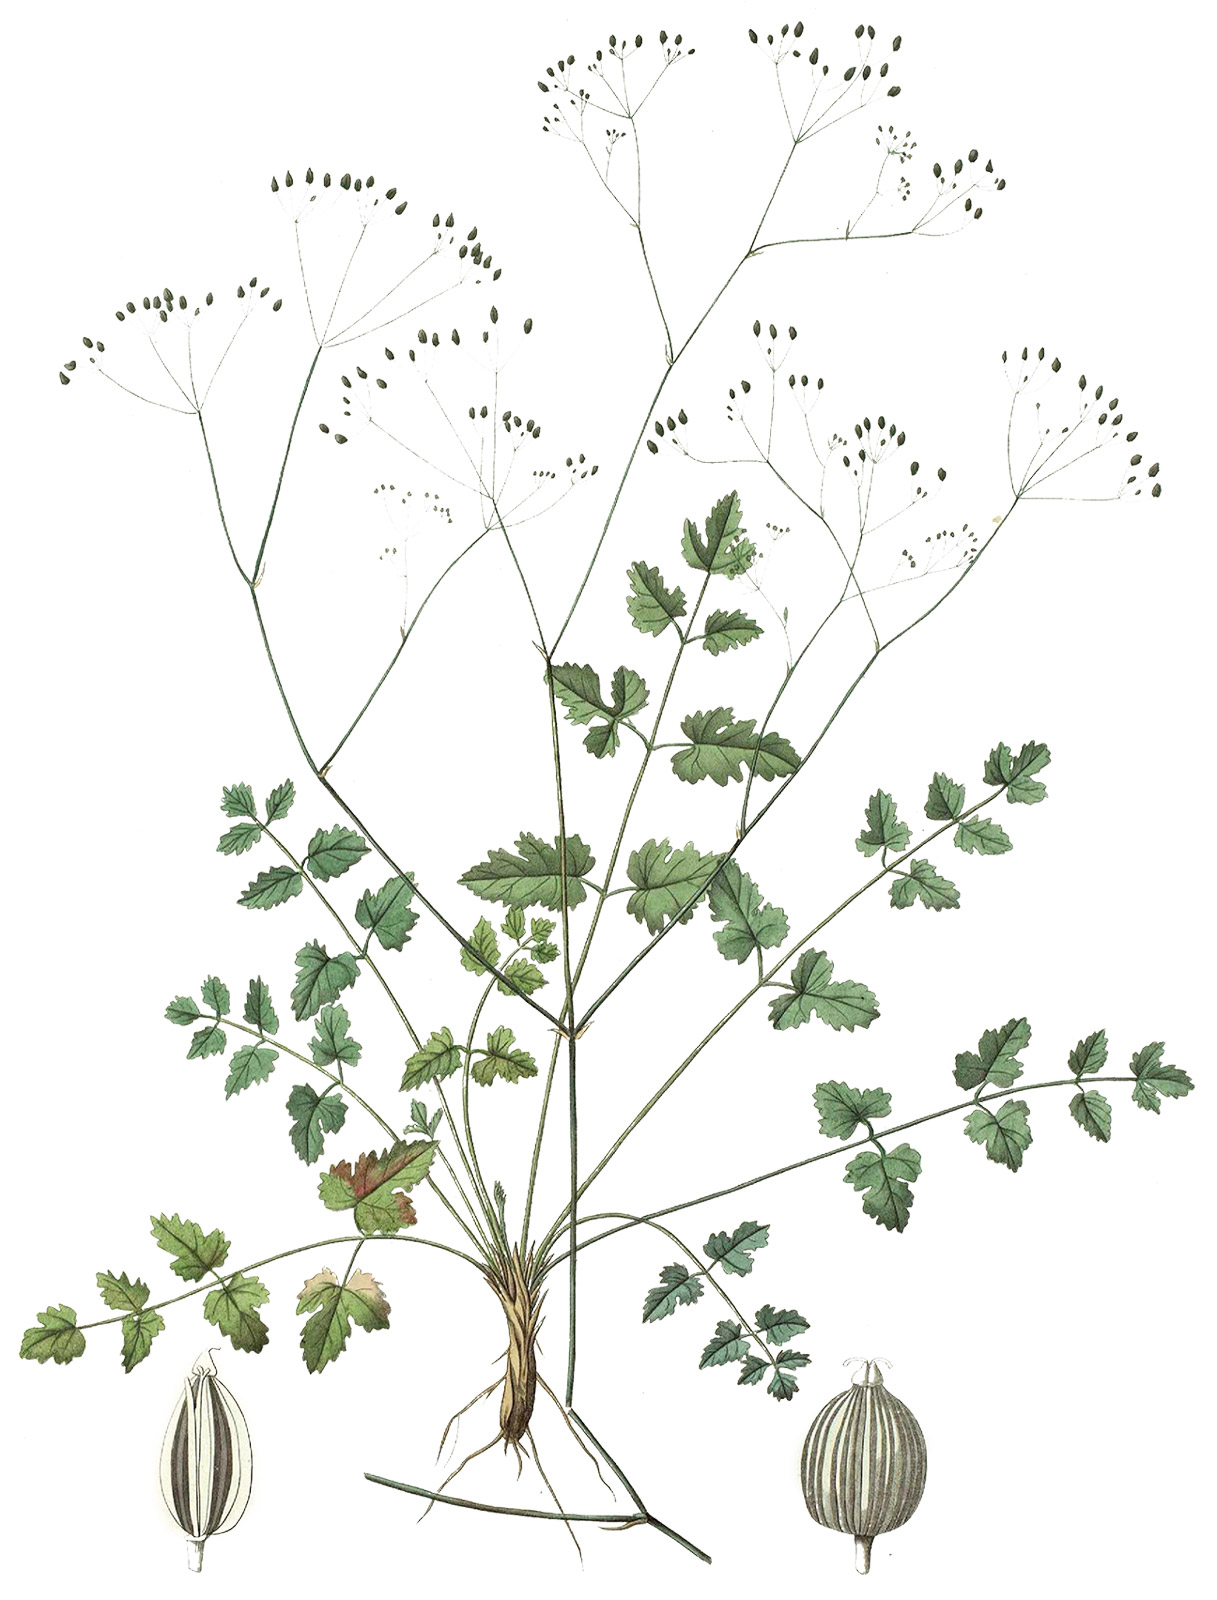 Pimpinella anisum